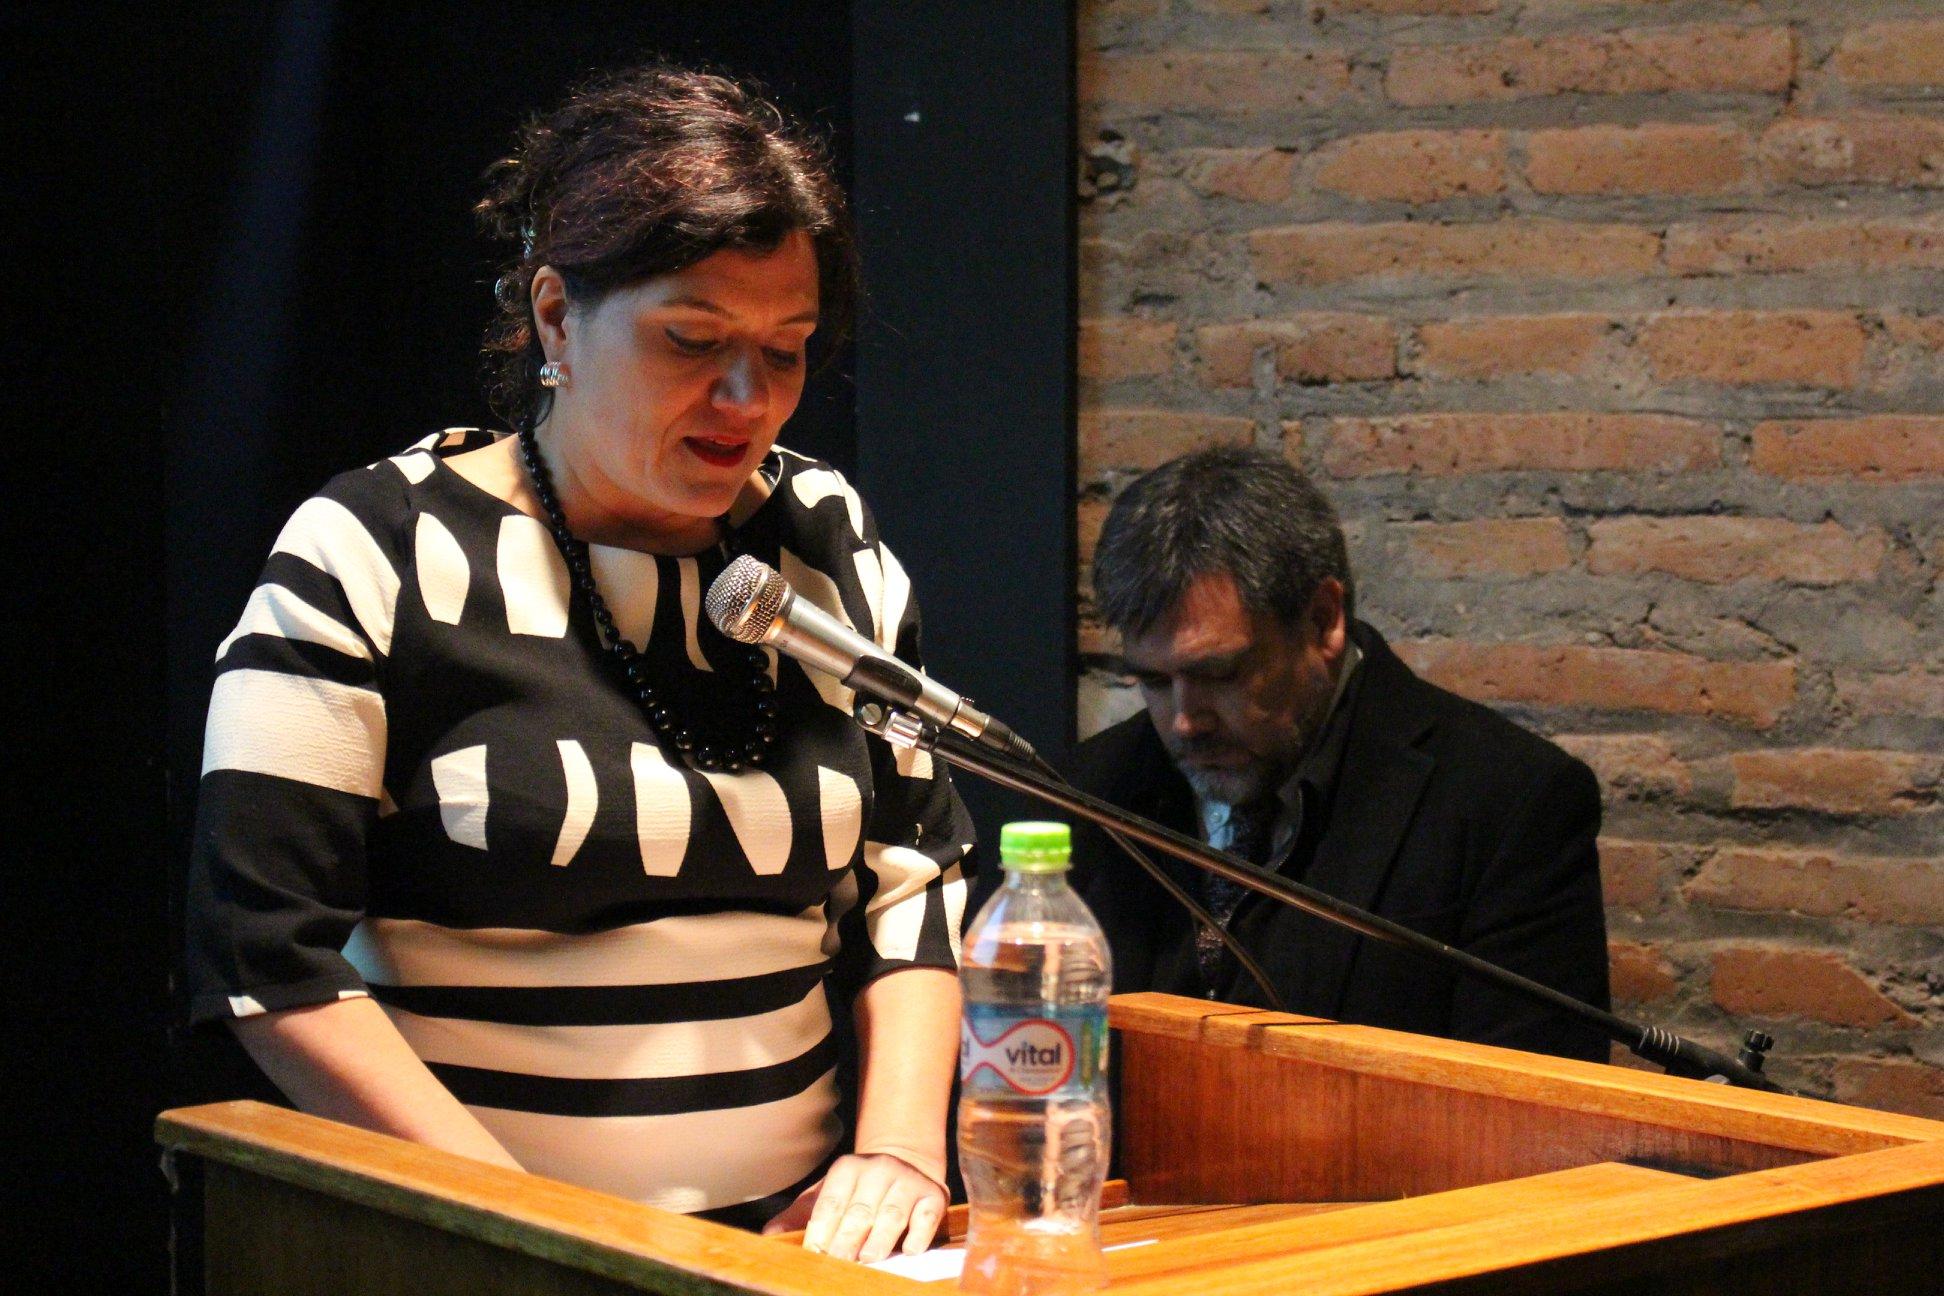 La directora Paola Jirón expresó que para el INVI relevante entregar este reconocimiento a Rodríguez, principalmente "porque tiene una trayectoria muy importante, tanto en Chile como América Latina".